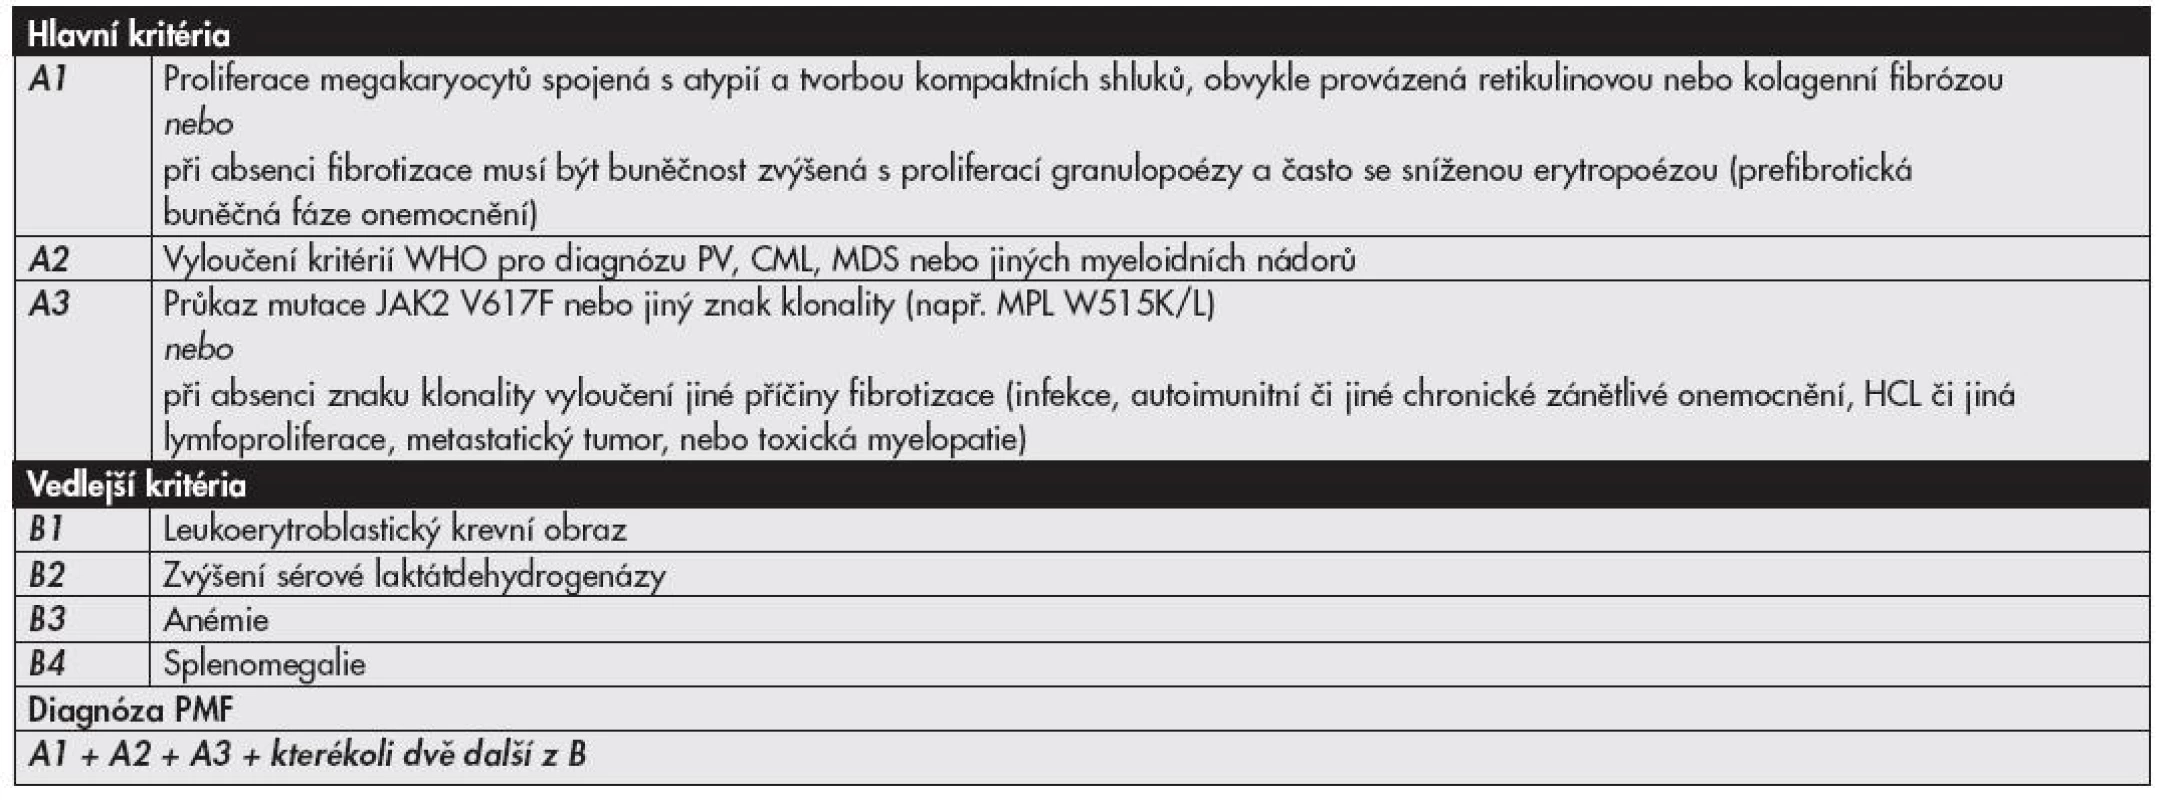 Diagnostická kritéria primární myelofibrózy podle klasifikace WHO (4).